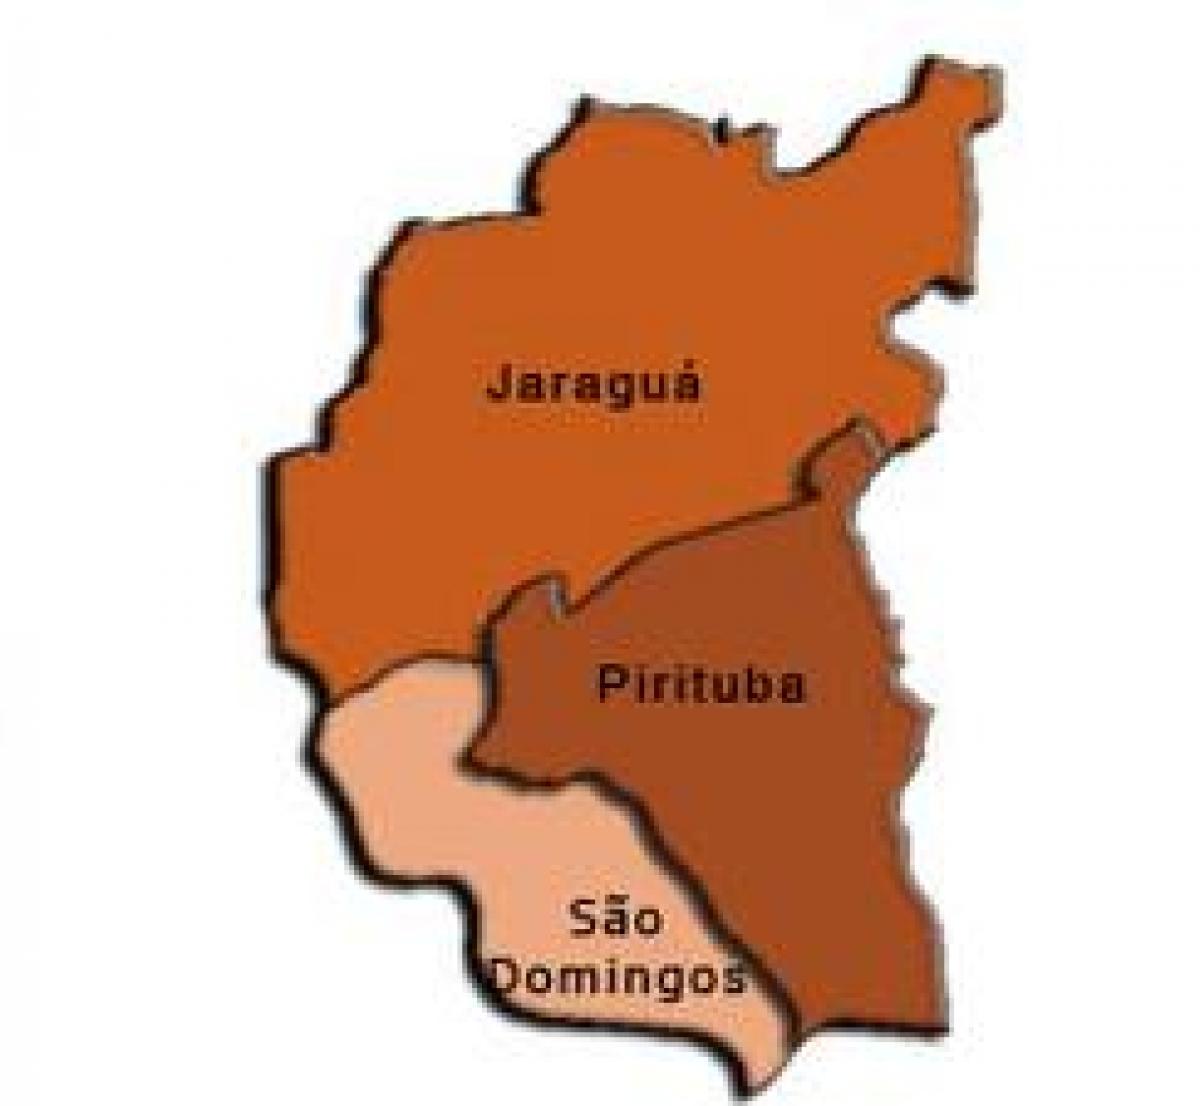 Mapa Pirituba-Jaraguá супрефектур